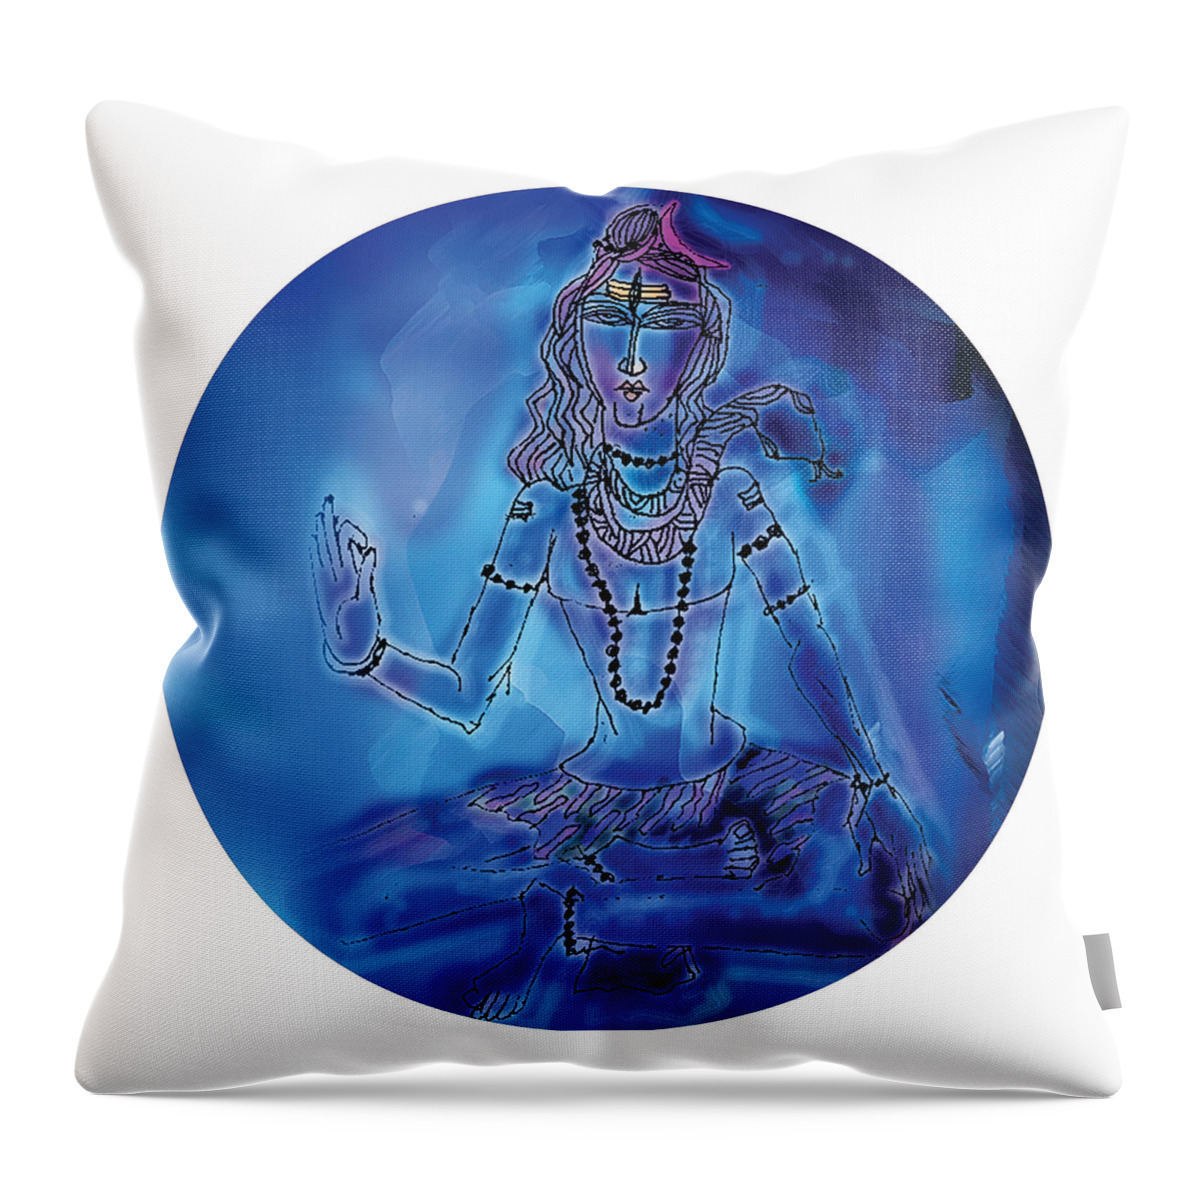 Himalaya Throw Pillow featuring the painting Blue Shiva by Guruji Aruneshvar Paris Art Curator Katrin Suter